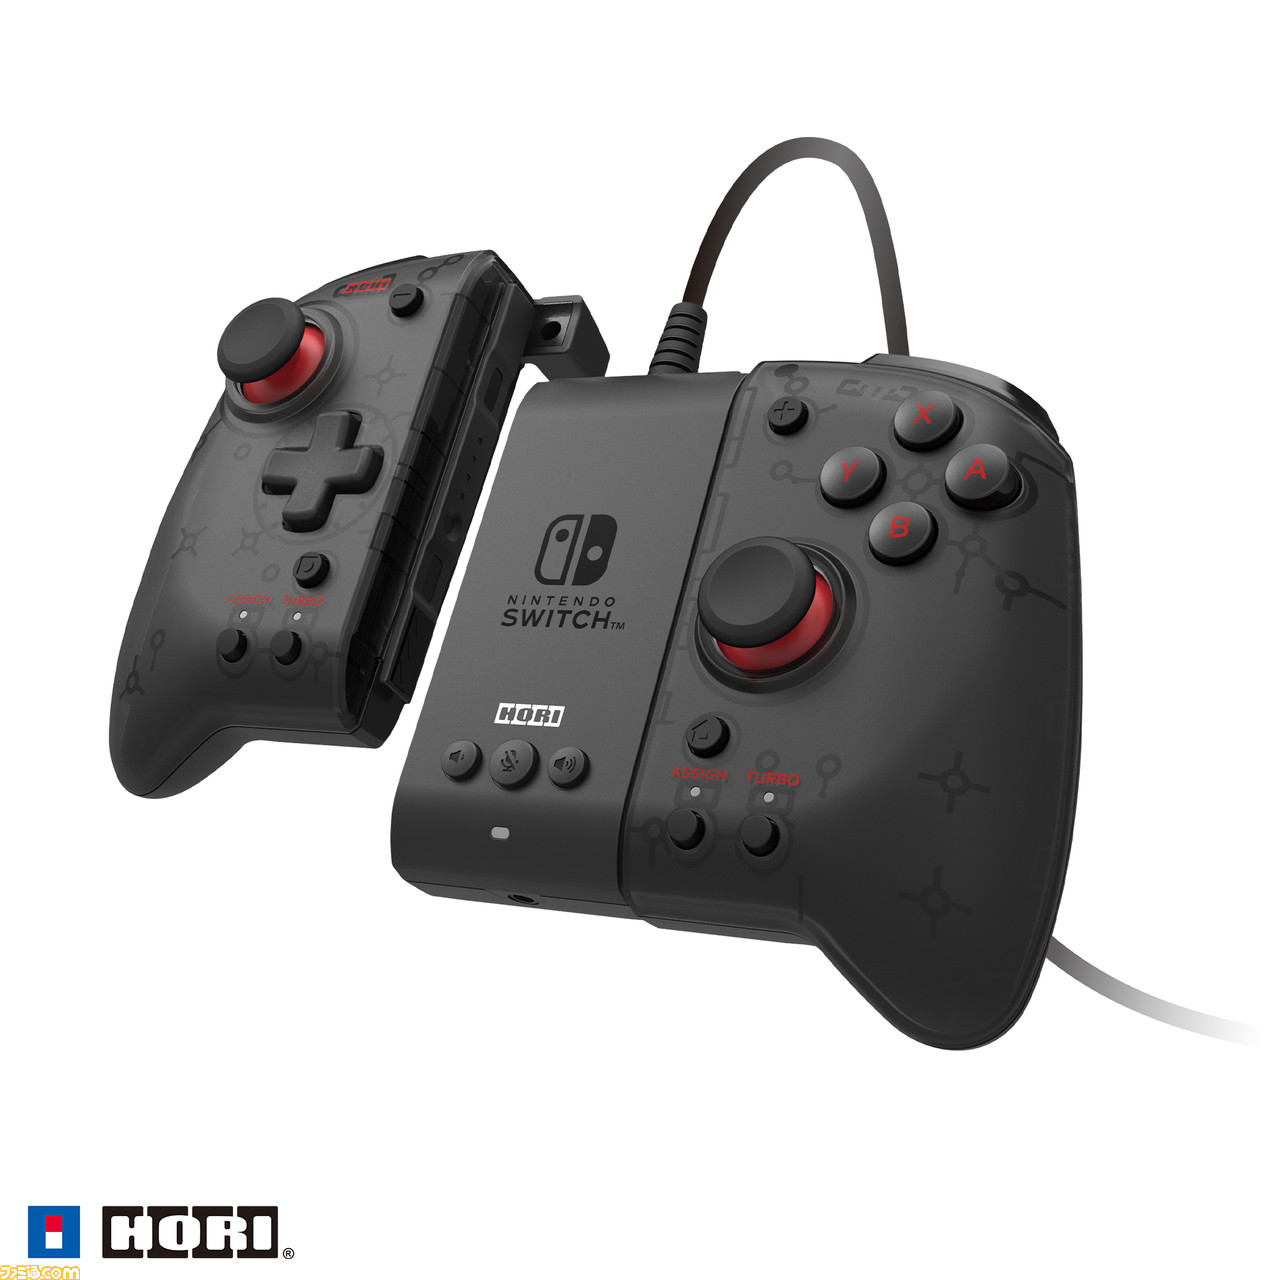 グリップコントローラー 専用アタッチメントセット For Nintendo Switch Pc が12月に発売 有線コントローラーとしてtvモードや Pcでも使用可能に ゲーム エンタメ最新情報のファミ通 Com